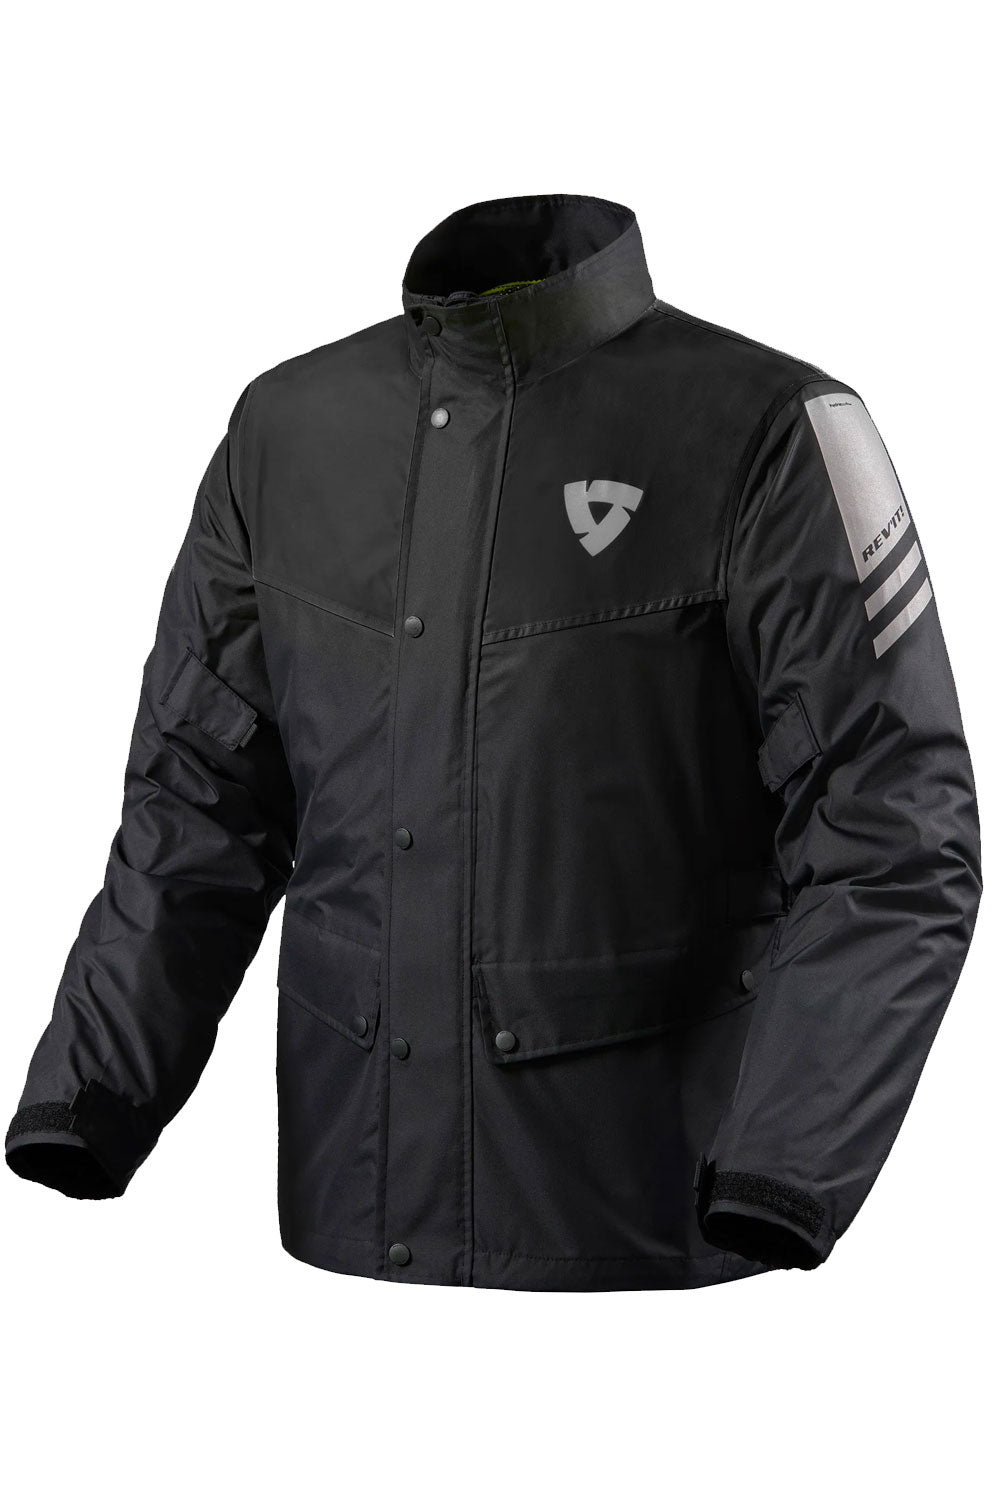 TNAC-Veste de moto coupe-vent pour femme, vêtements d'équitation résistants  au froid, motocross, endflats, course, VTT